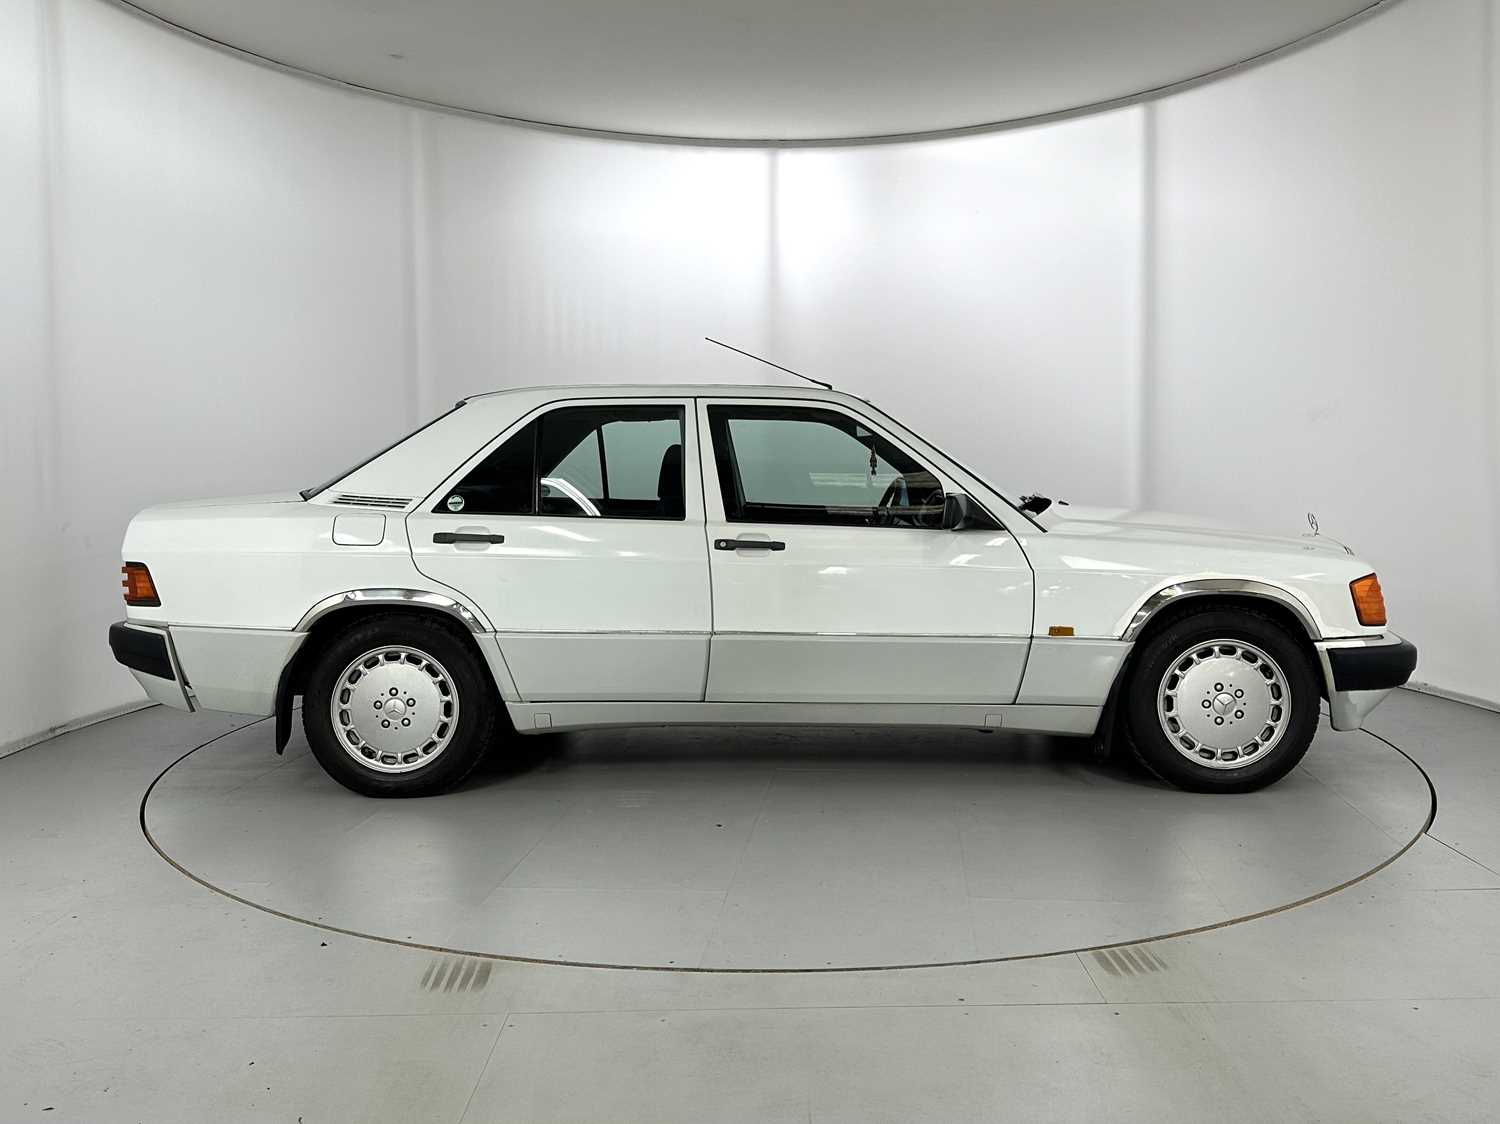 1989 Mercedes-Benz 190E - Image 11 of 34